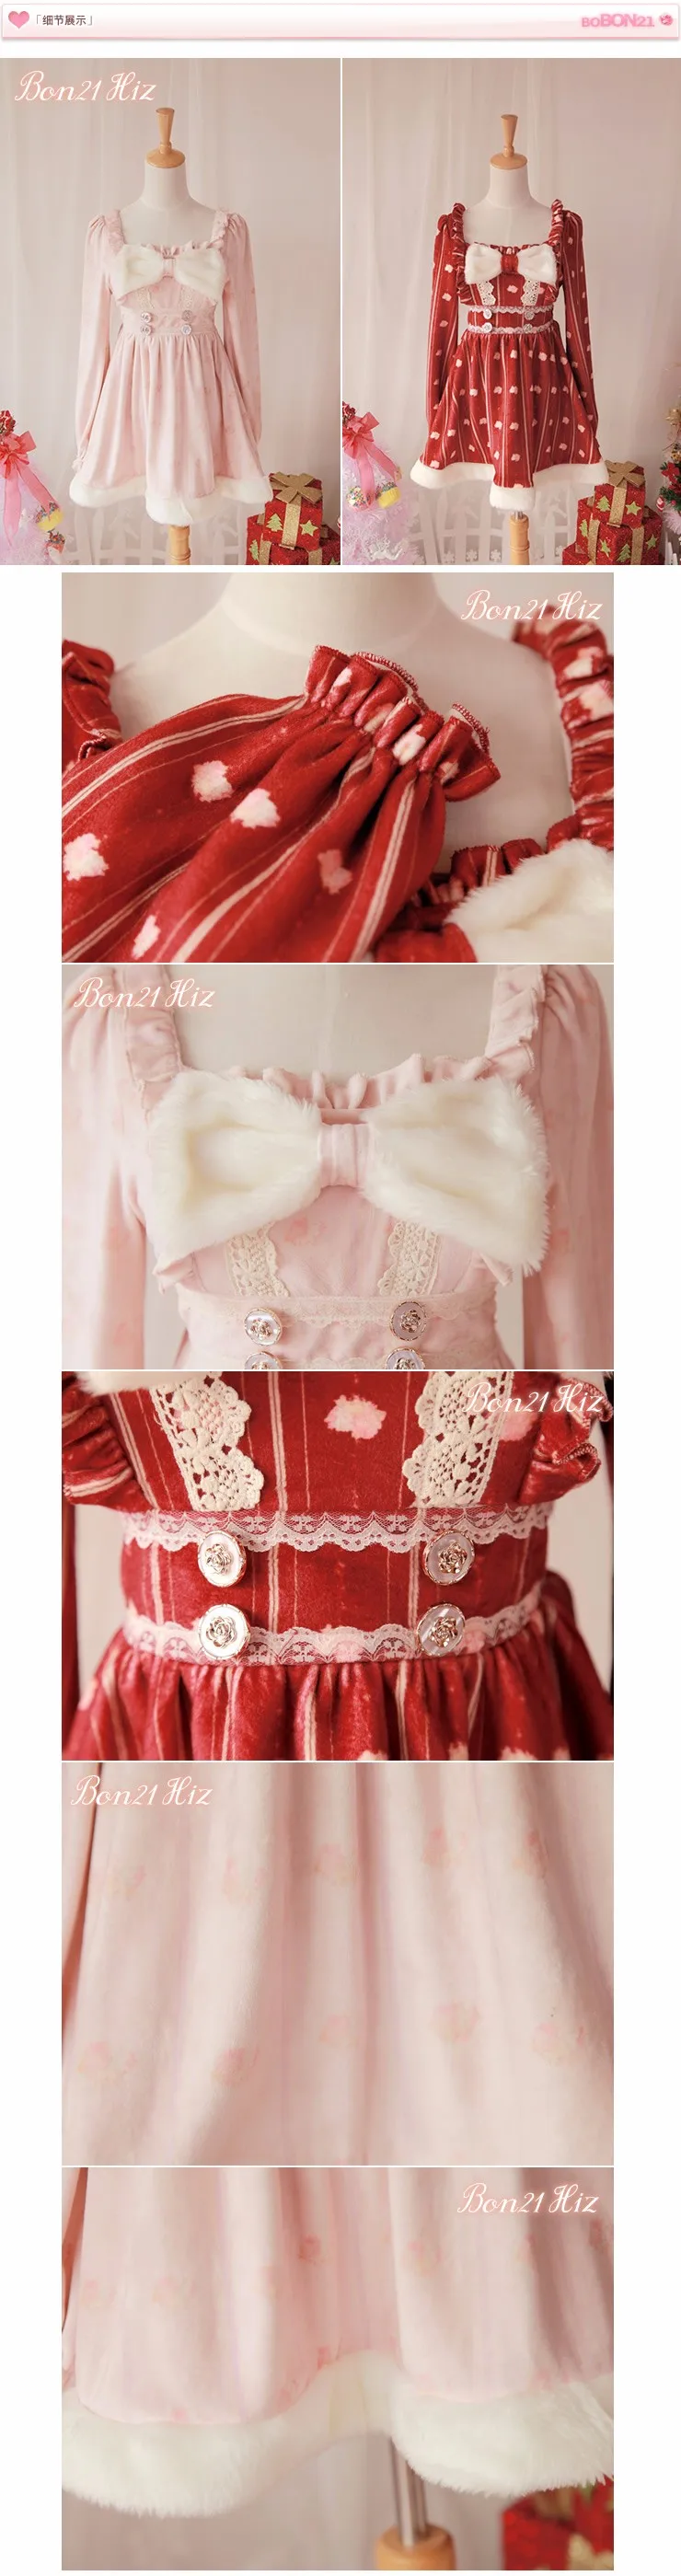 Принцесса сладкий лолита dressBOBON21 эксклюзивный дизайн плюшевые текстуры дворец печатных Рождество платье D1153